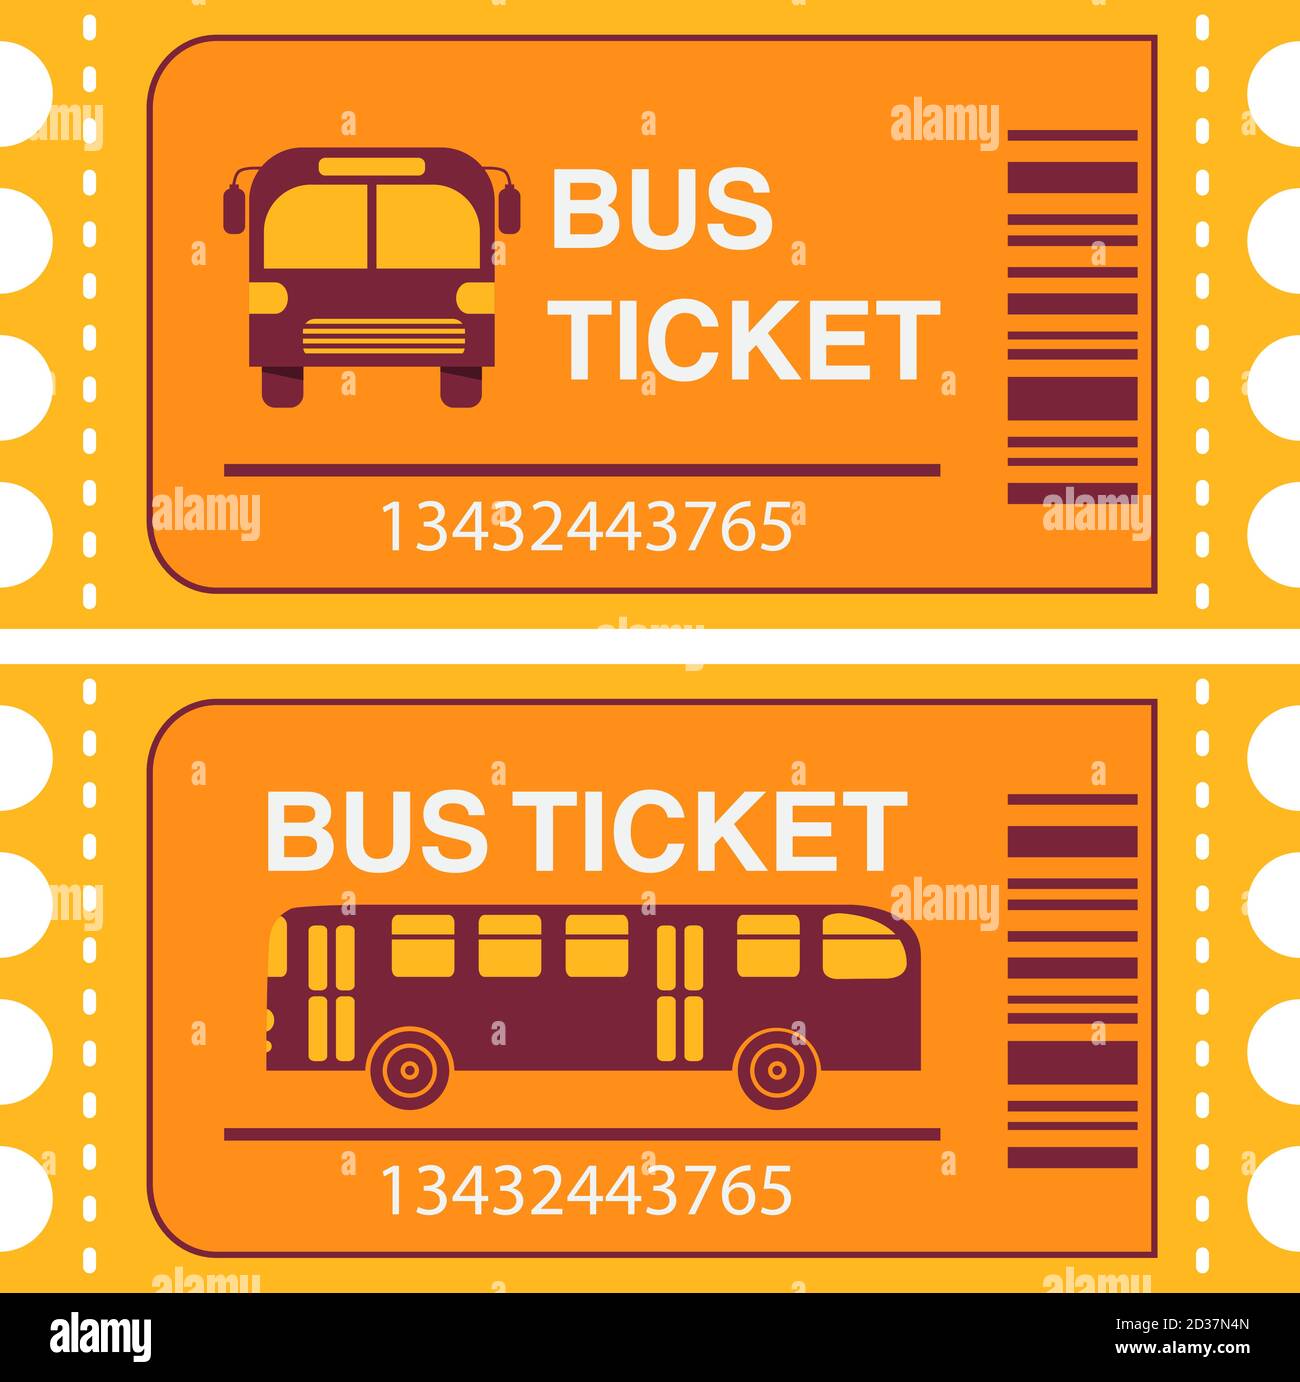 ticket-de-bus-transport-en-commun-vue-lat-rale-du-bus-et-devant-image